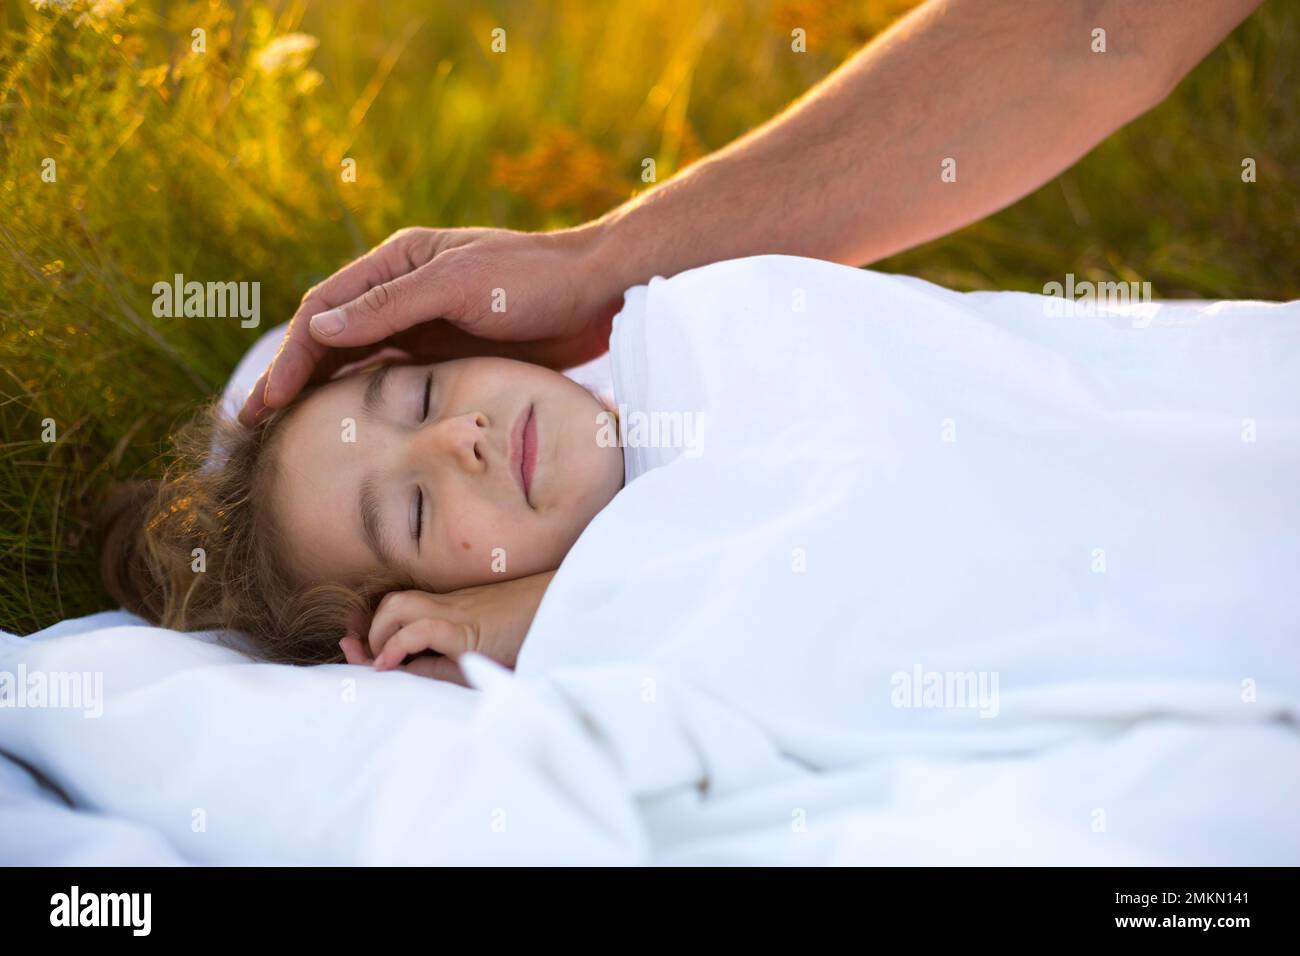 Mädchen schläft auf weißem Bett im Gras, frische Luft. Dads Hand klopft ihm sanft auf den Kopf. Pflege, Schutz, Internationaler Kindertag, Mückenstiche Stockfoto